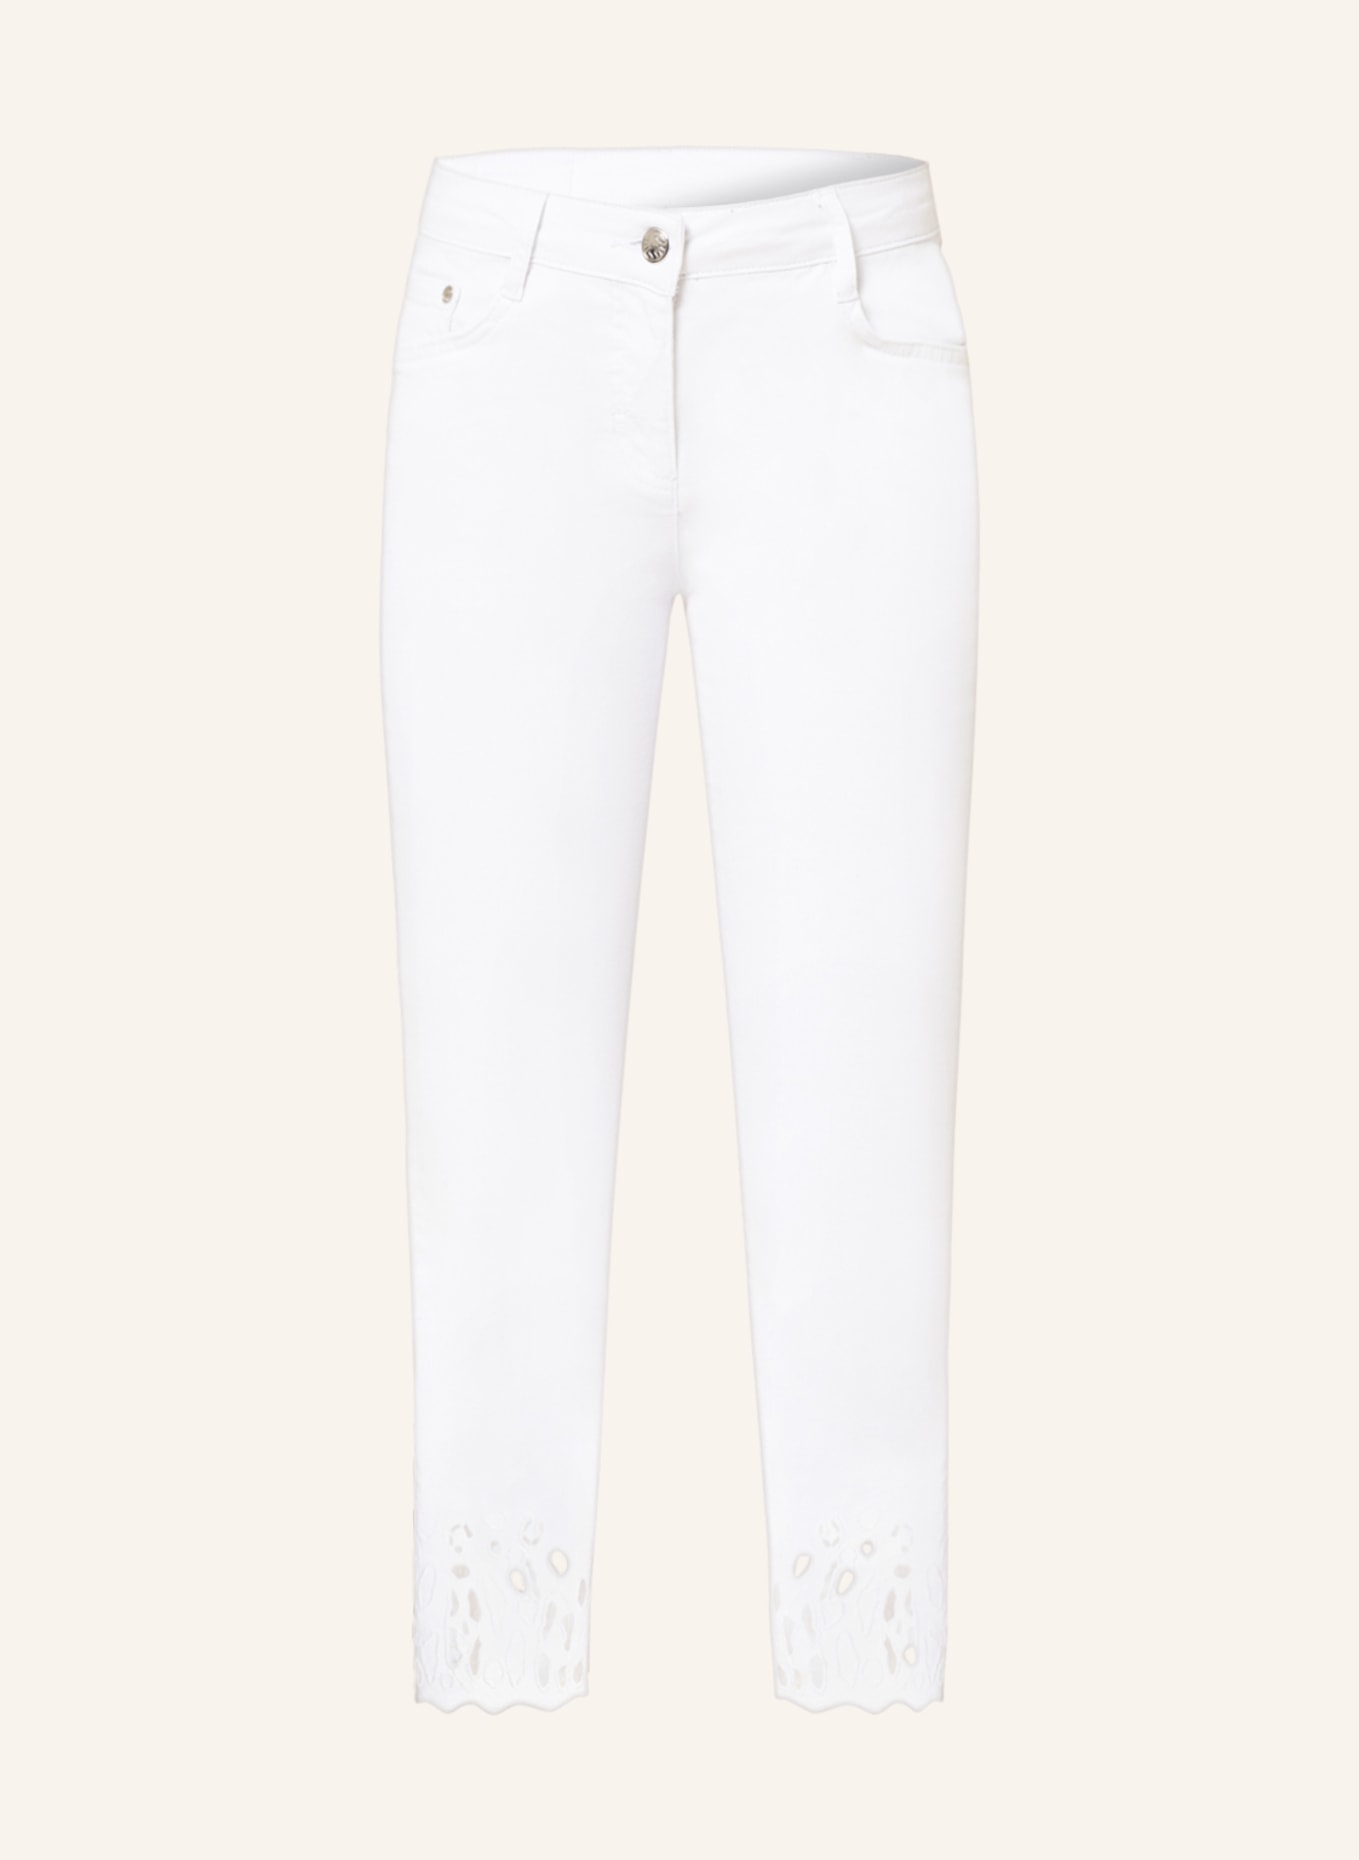 SPORTALM 7/8-Jeans mit Stickereien, Farbe: 01 OPTICAL WHITE (Bild 1)